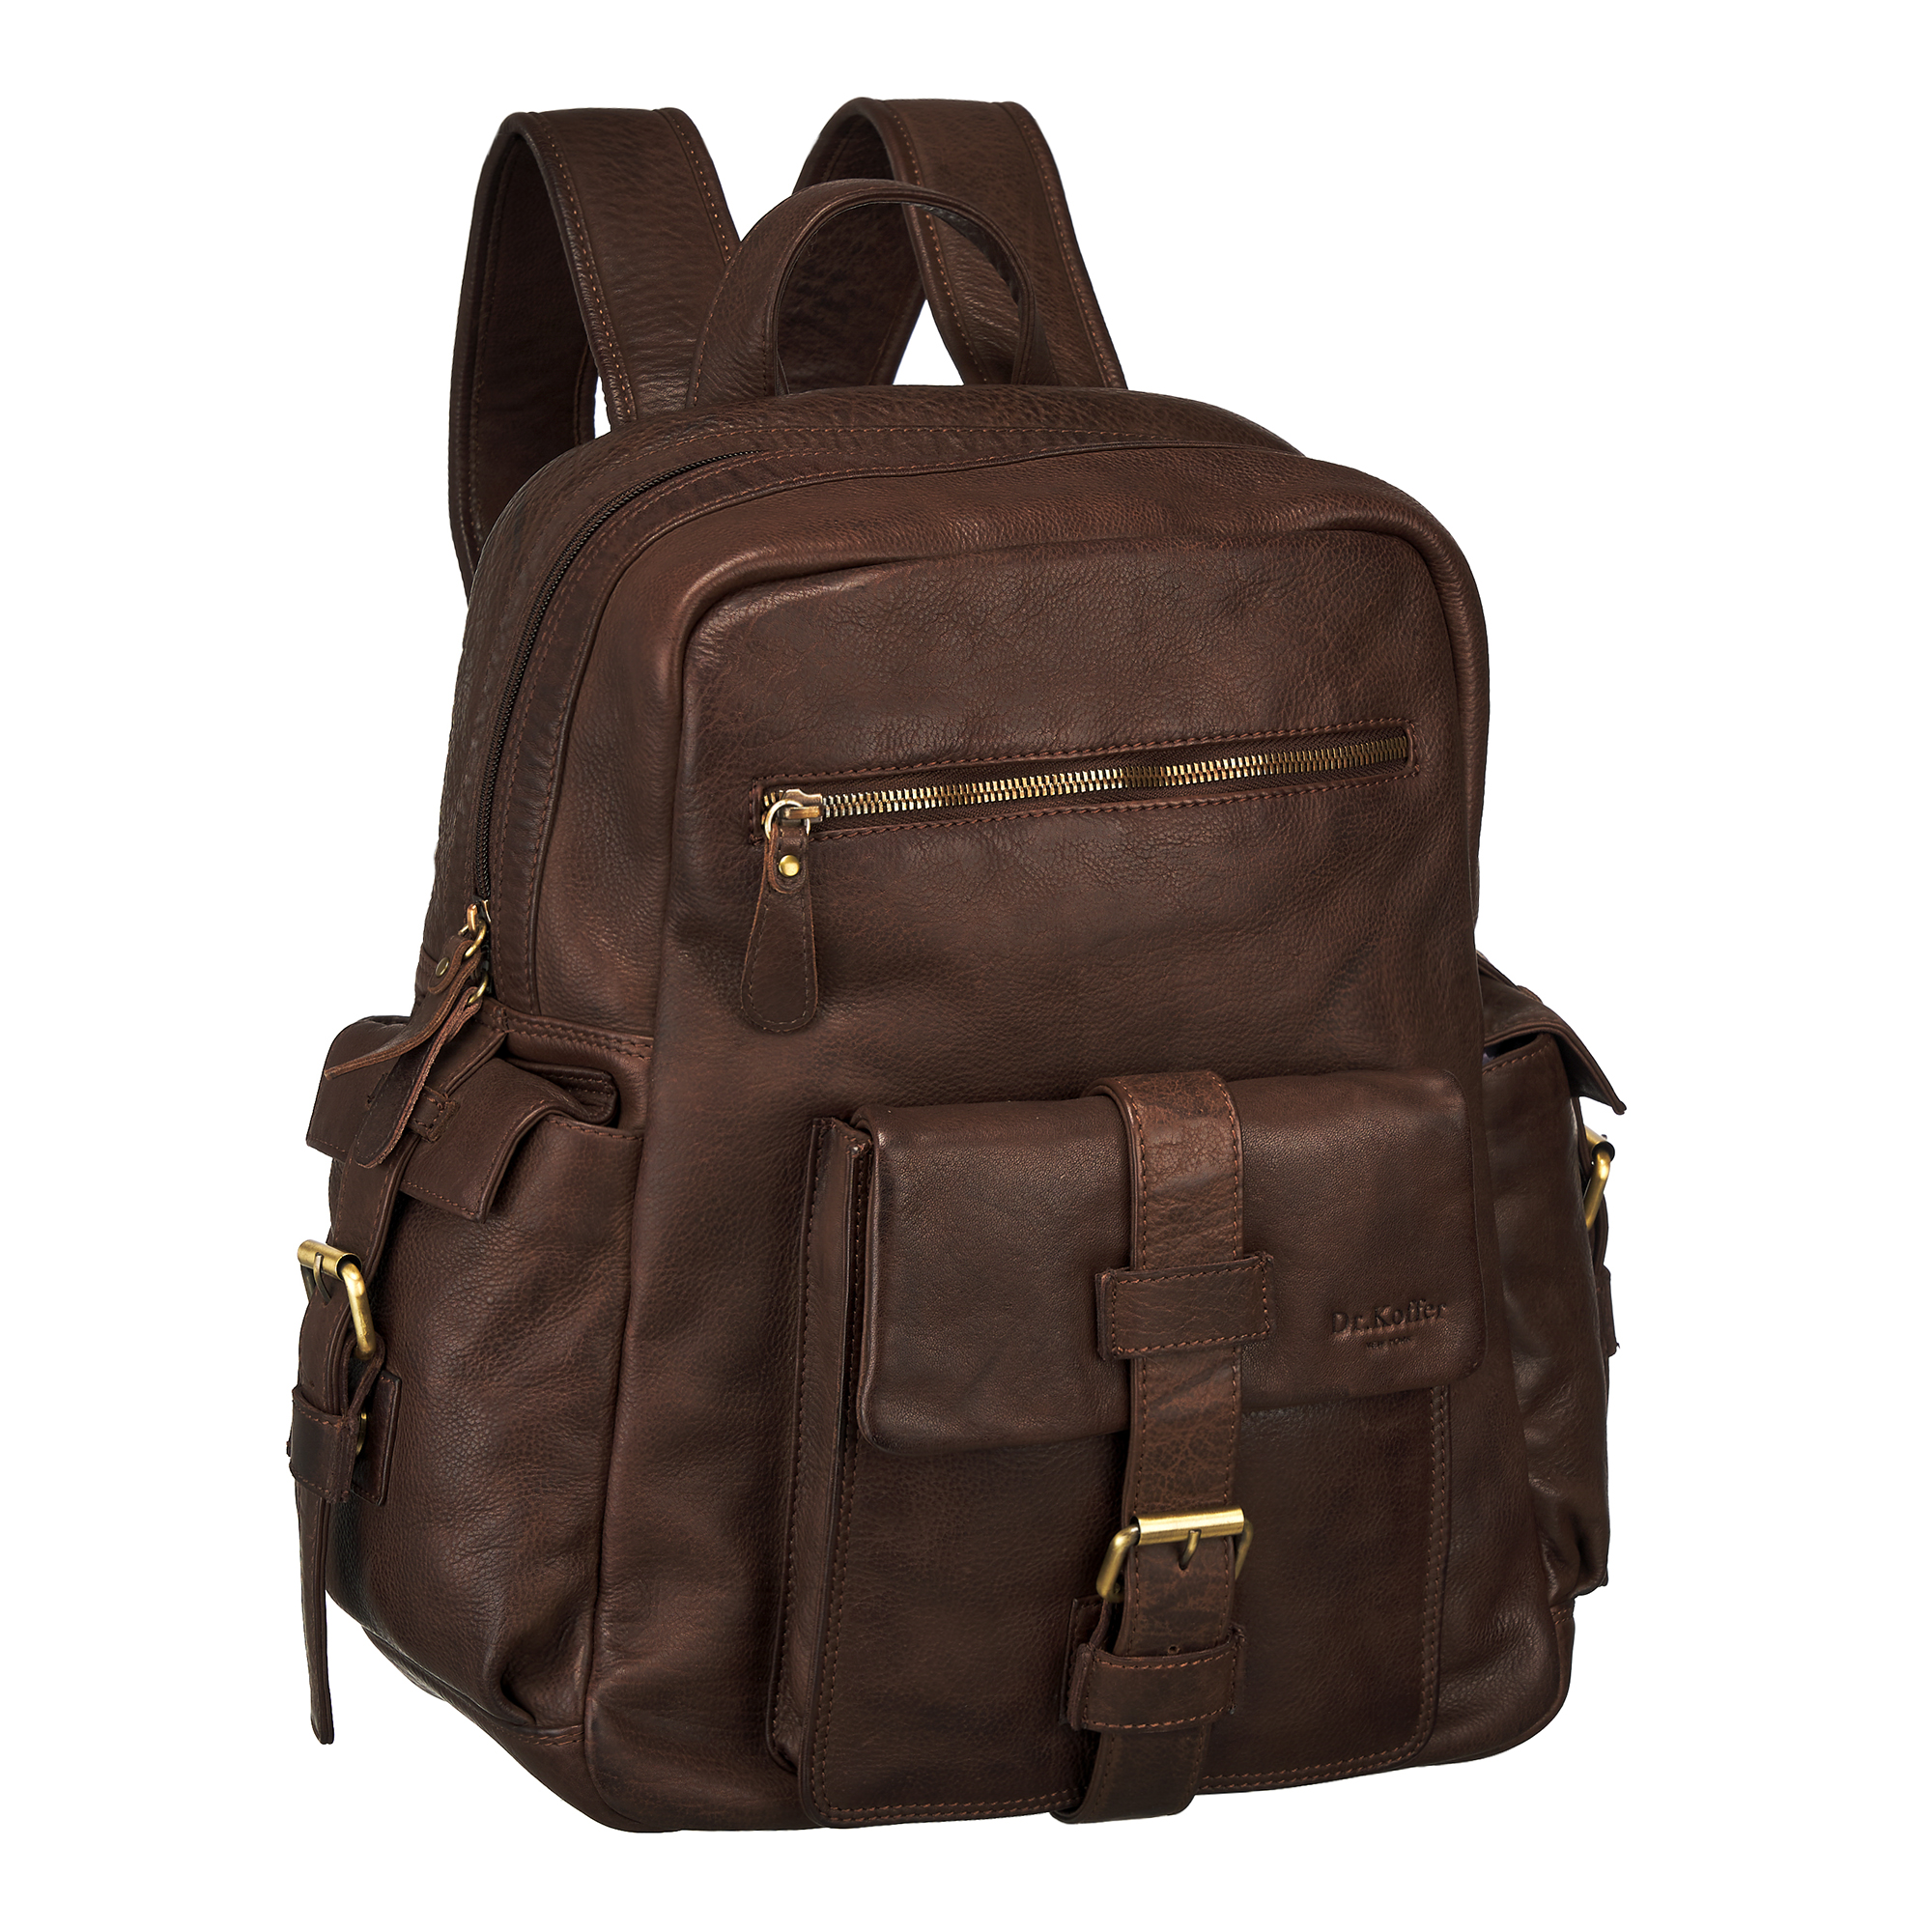 Др.Коффер M402719-248-09 рюкзак, цвет коричневый